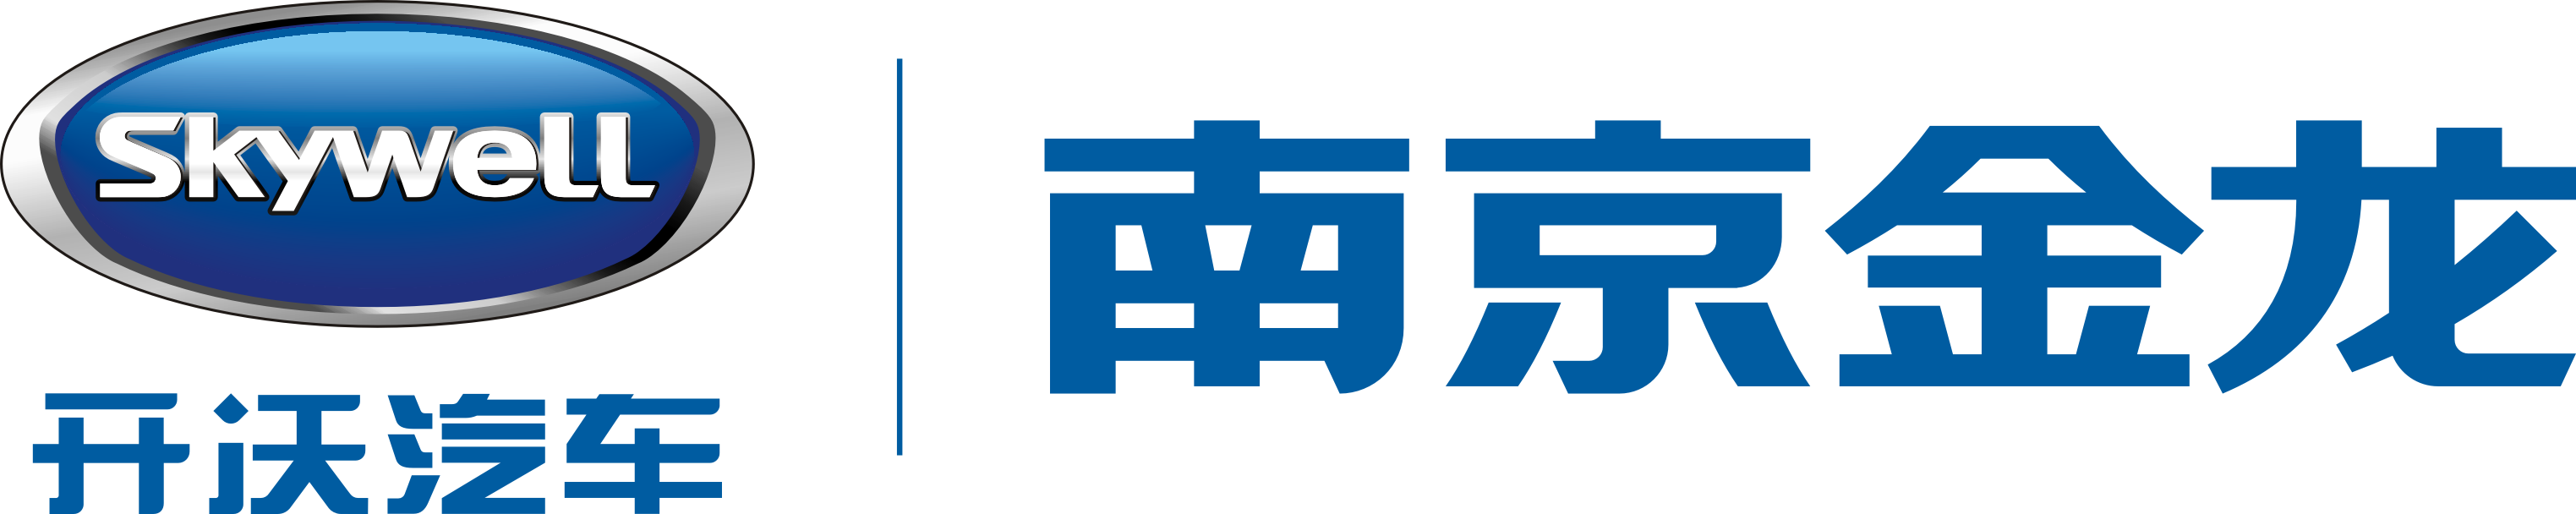 南京金龙logo图片